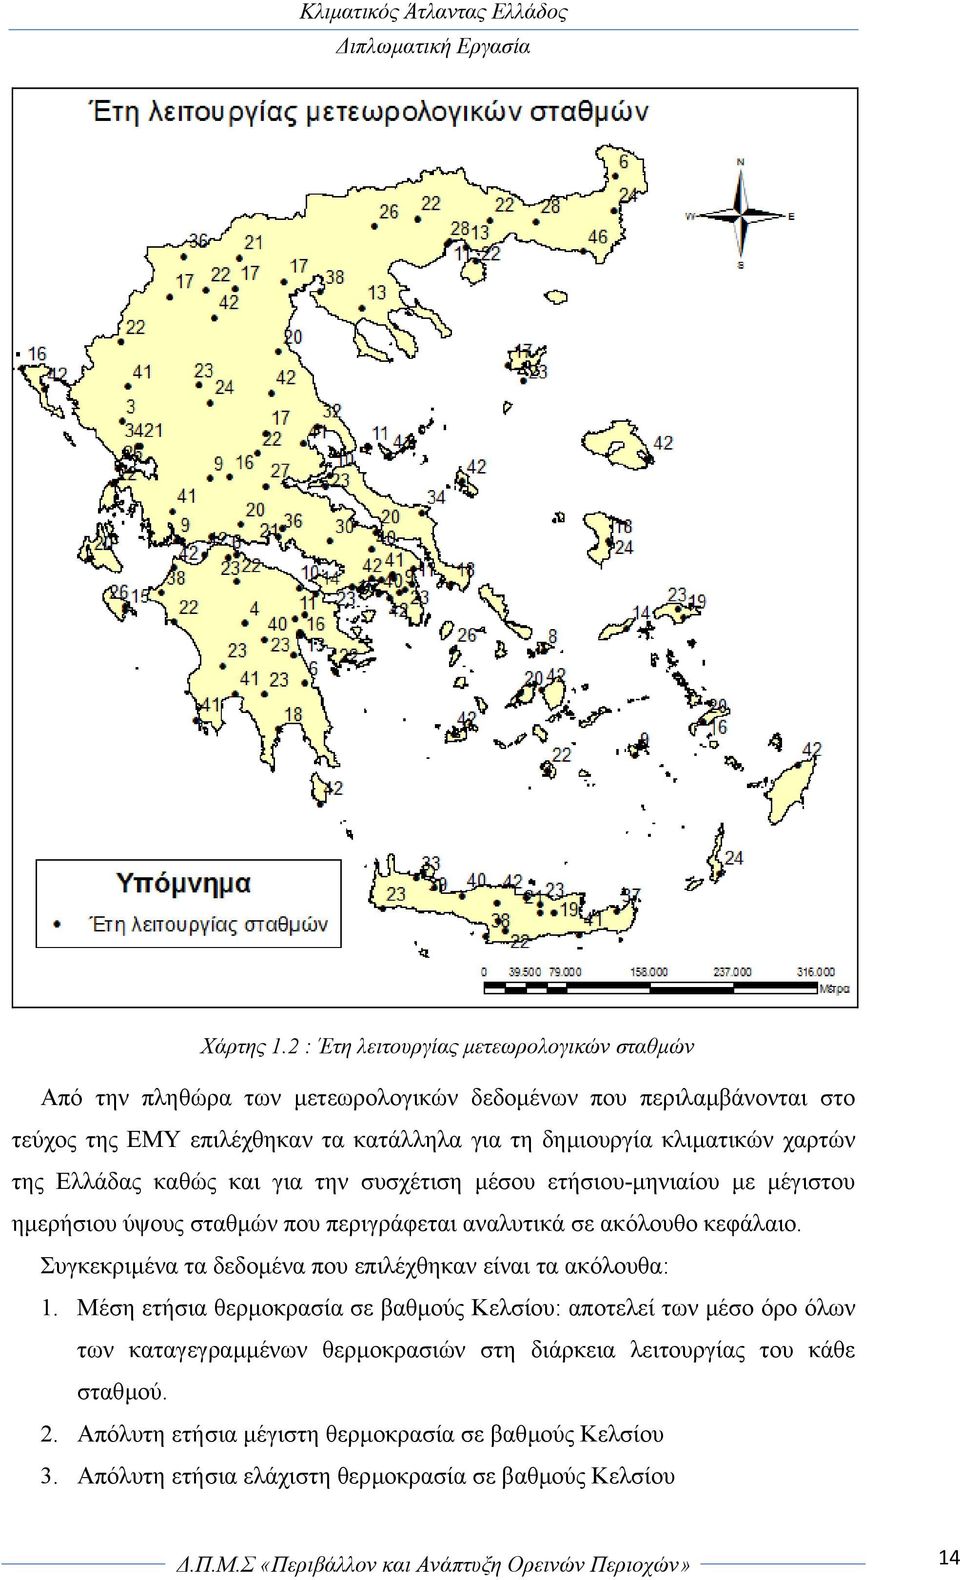 δηµιουργία κλιµατικών χαρτών της Ελλάδας καθώς και για την συσχέτιση µέσου ετήσιου-µηνιαίου µε µέγιστου ηµερήσιου ύψους σταθµών που περιγράφεται αναλυτικά σε ακόλουθο